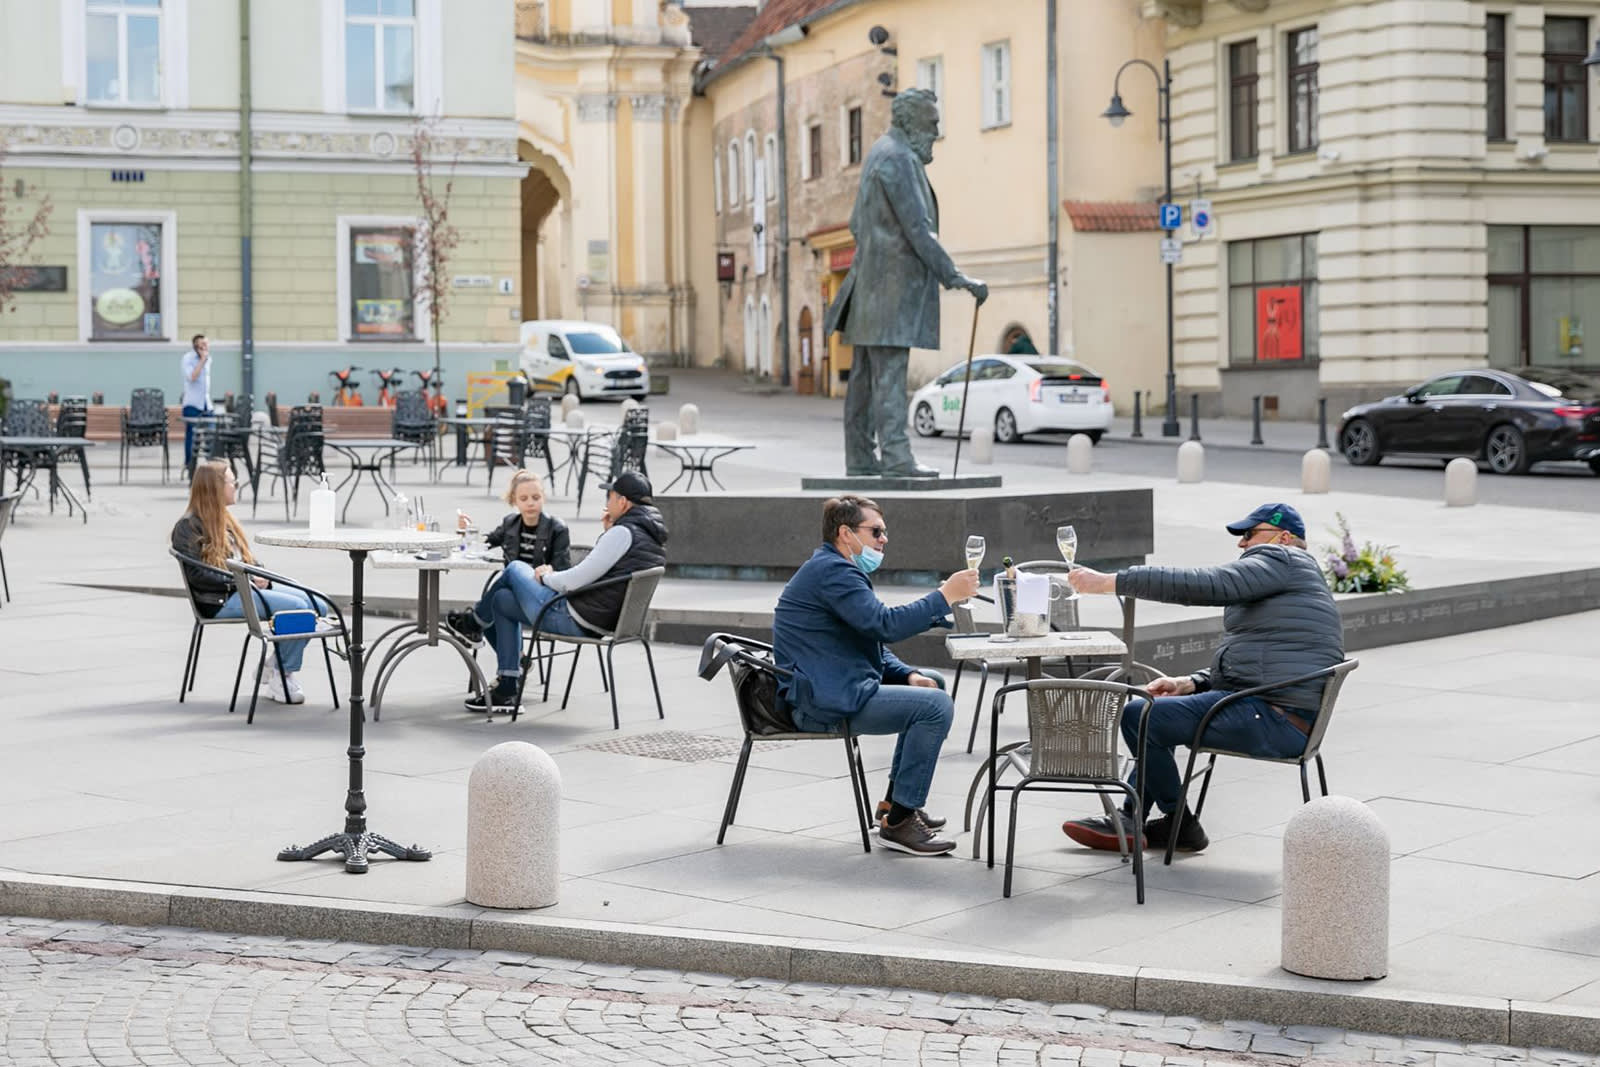 ليتوانيا تأخذ بعين الاعتبار فكرة تحويل إحدى مدنها لمقهى كبير مفتوح